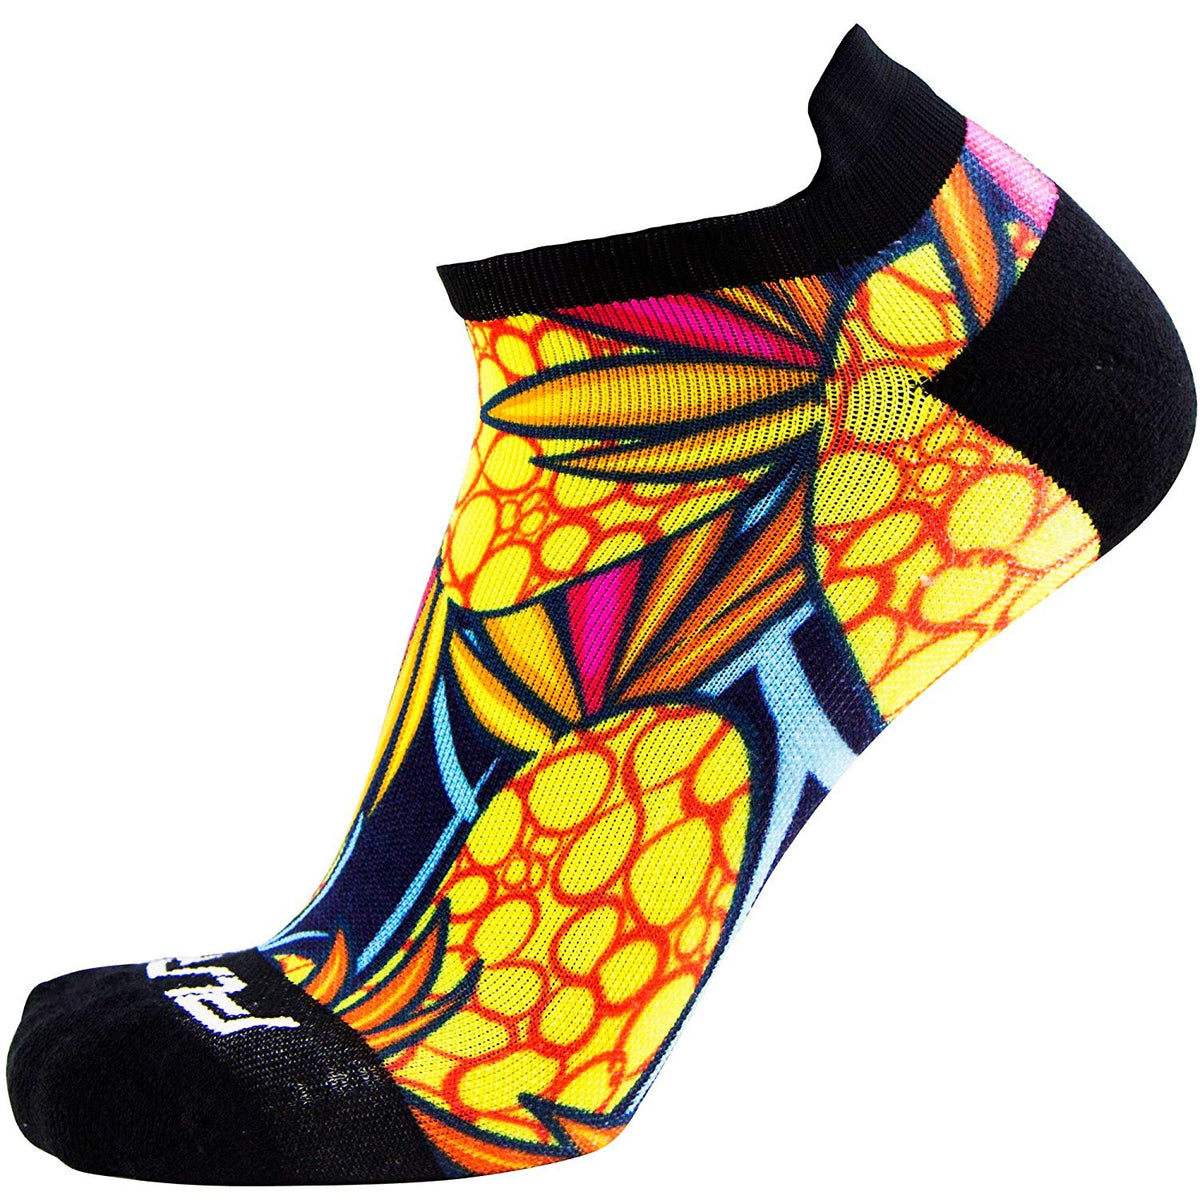 No-Show Anti-Blister Running Socks - Moisture Wicking Sport Socks